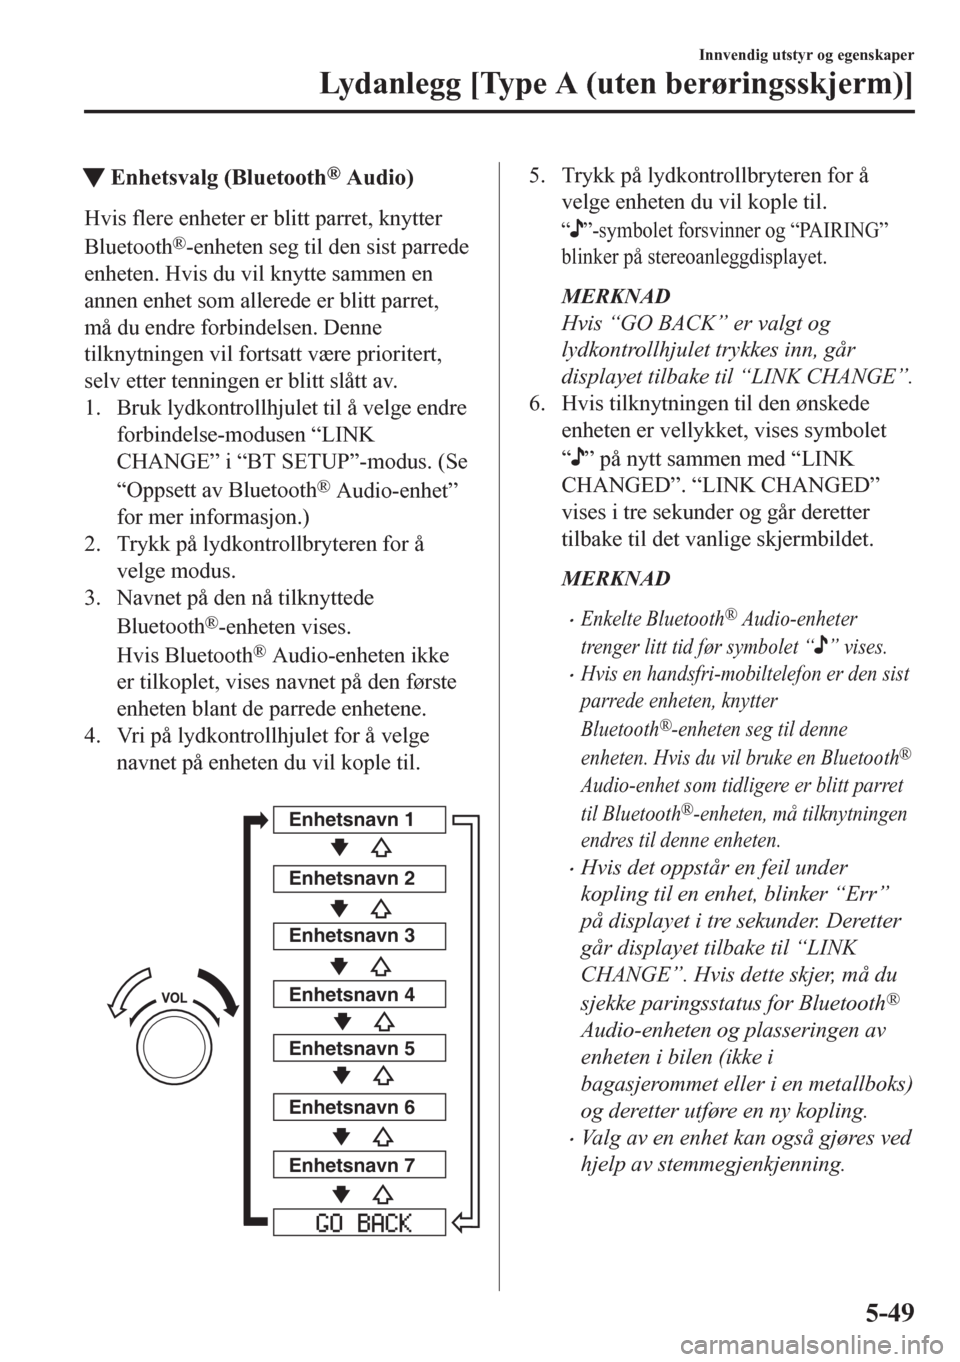 MAZDA MODEL CX-5 2018  Brukerhåndbok (in Norwegian) tEnhetsvalg (Bluetooth® Audio)
Hvis flere enheter er blitt parret, knytter
Bluetooth
®-enheten seg til den sist parrede
enheten. Hvis du vil knytte sammen en
annen enhet som allerede er blitt parret